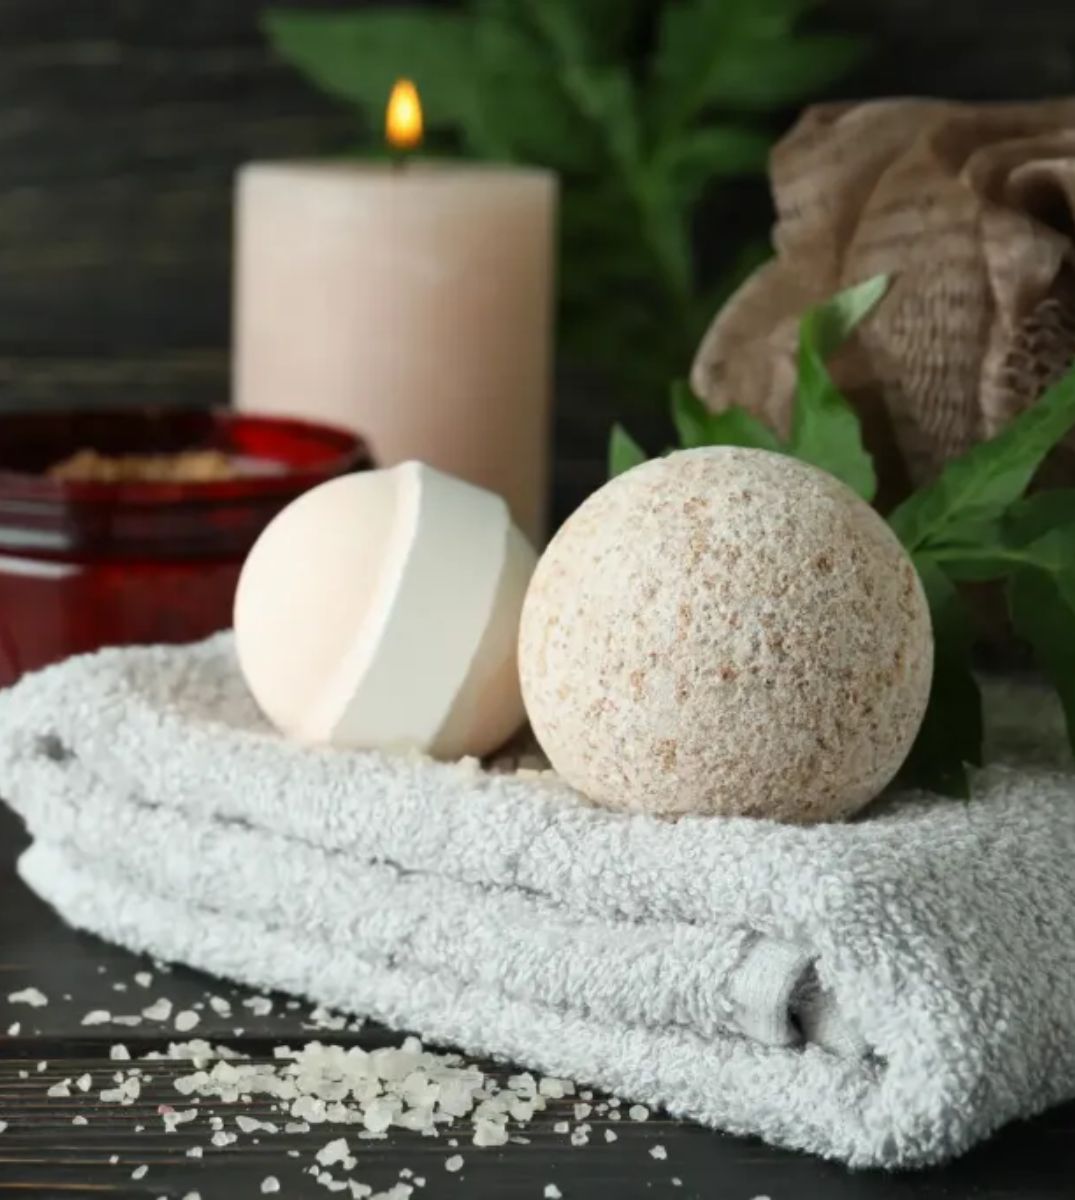 Stillleben-Anordnung für Wellness und Entspannung mit Badebomben auf einem flauschigen Handtuch, begleitet von einer brennenden Kerze und einem Glas Hautpflegeprodukt auf einem dunklen Holzhintergrund.